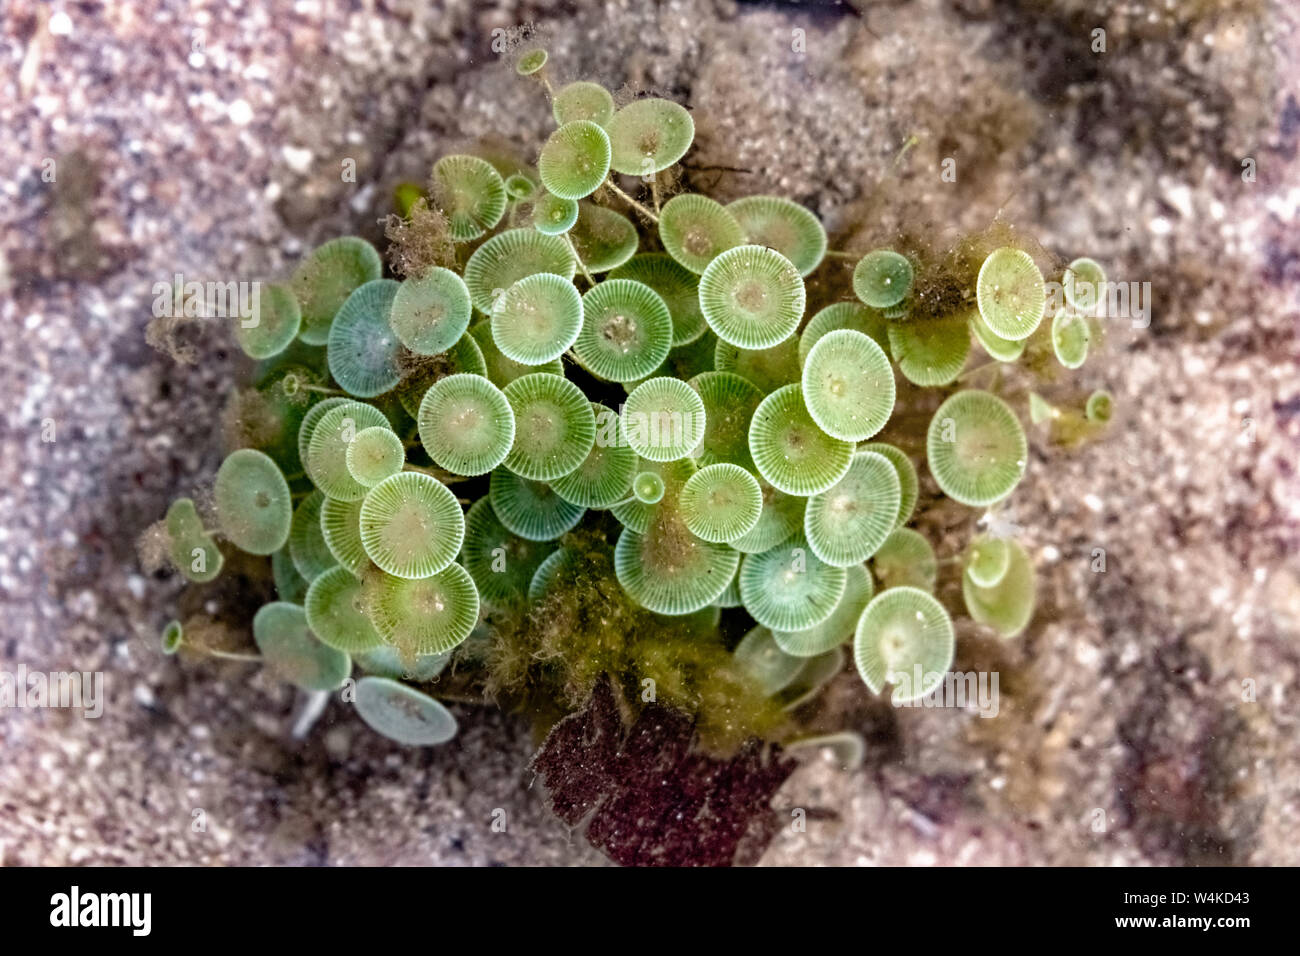 Nom scientifique : Acetabularia sp., également connu sous le nom de Mermaid's wineglass en raison de sa forme. Une belle espèces marines d'algues vertes sous l'eau en fleurs. Banque D'Images